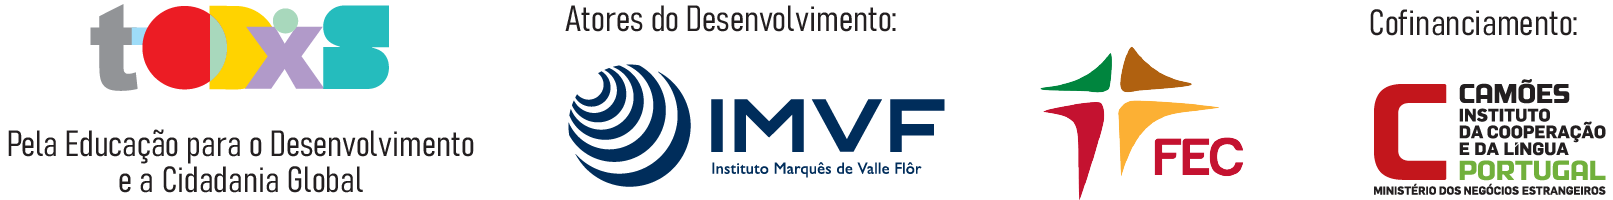 IMFV - todos